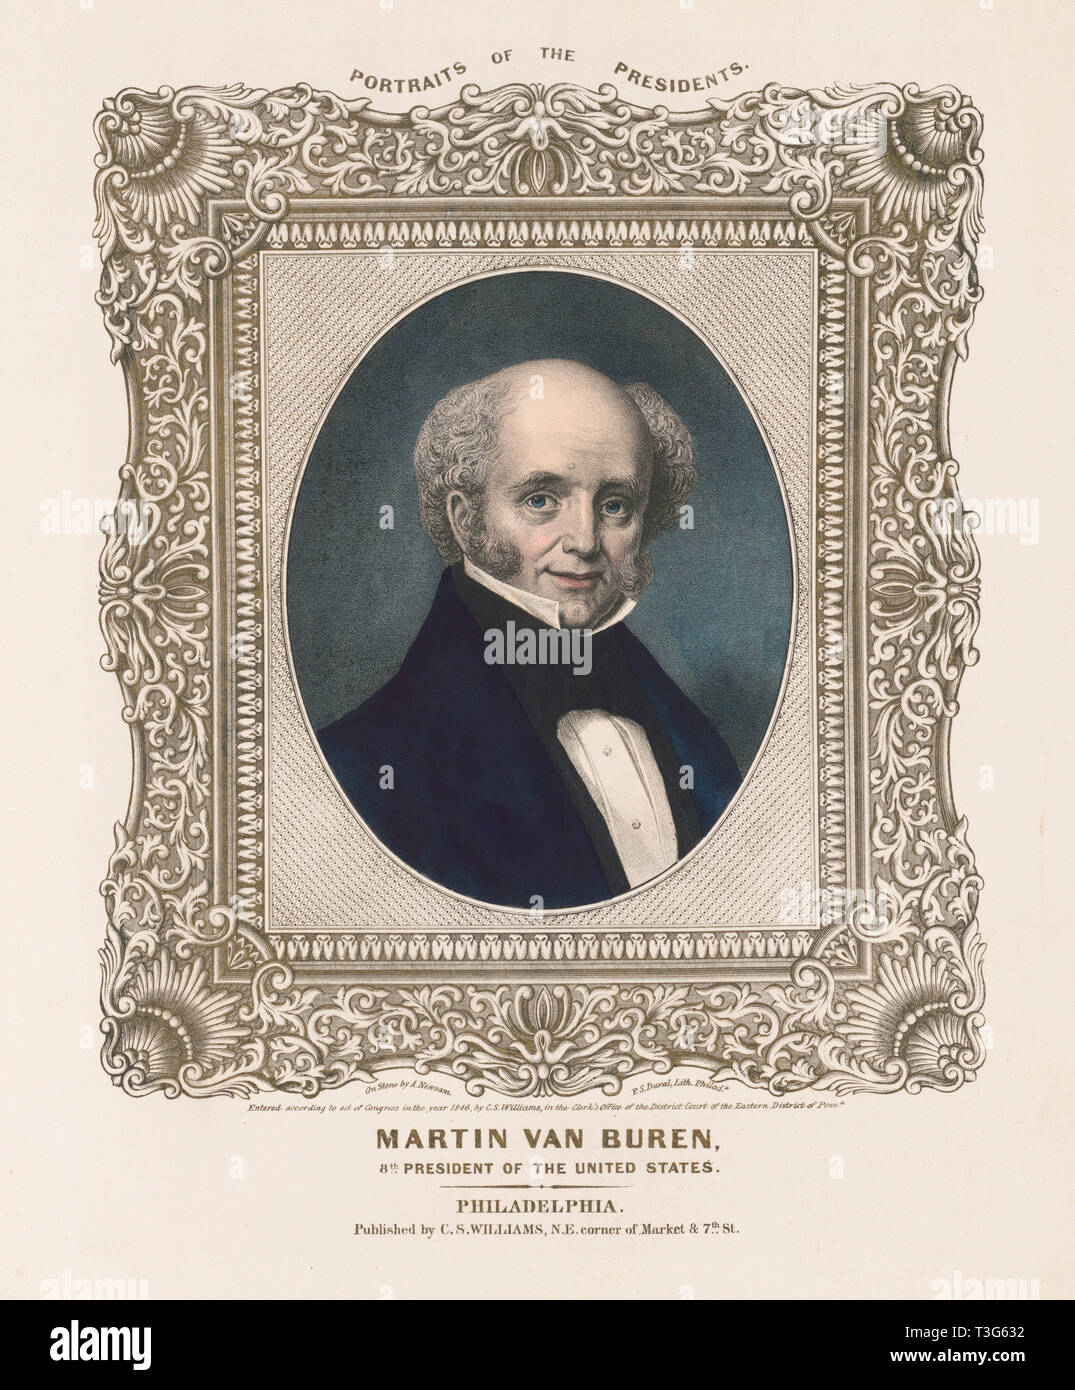 Martin Van Buren, achte Präsident der Vereinigten Staaten, vom Leben auf Stein von A. Newsam, Lithographie von A. Duval, Veröffentlicht von C.S. Williams, Philadelphia, 1846 Stockfoto